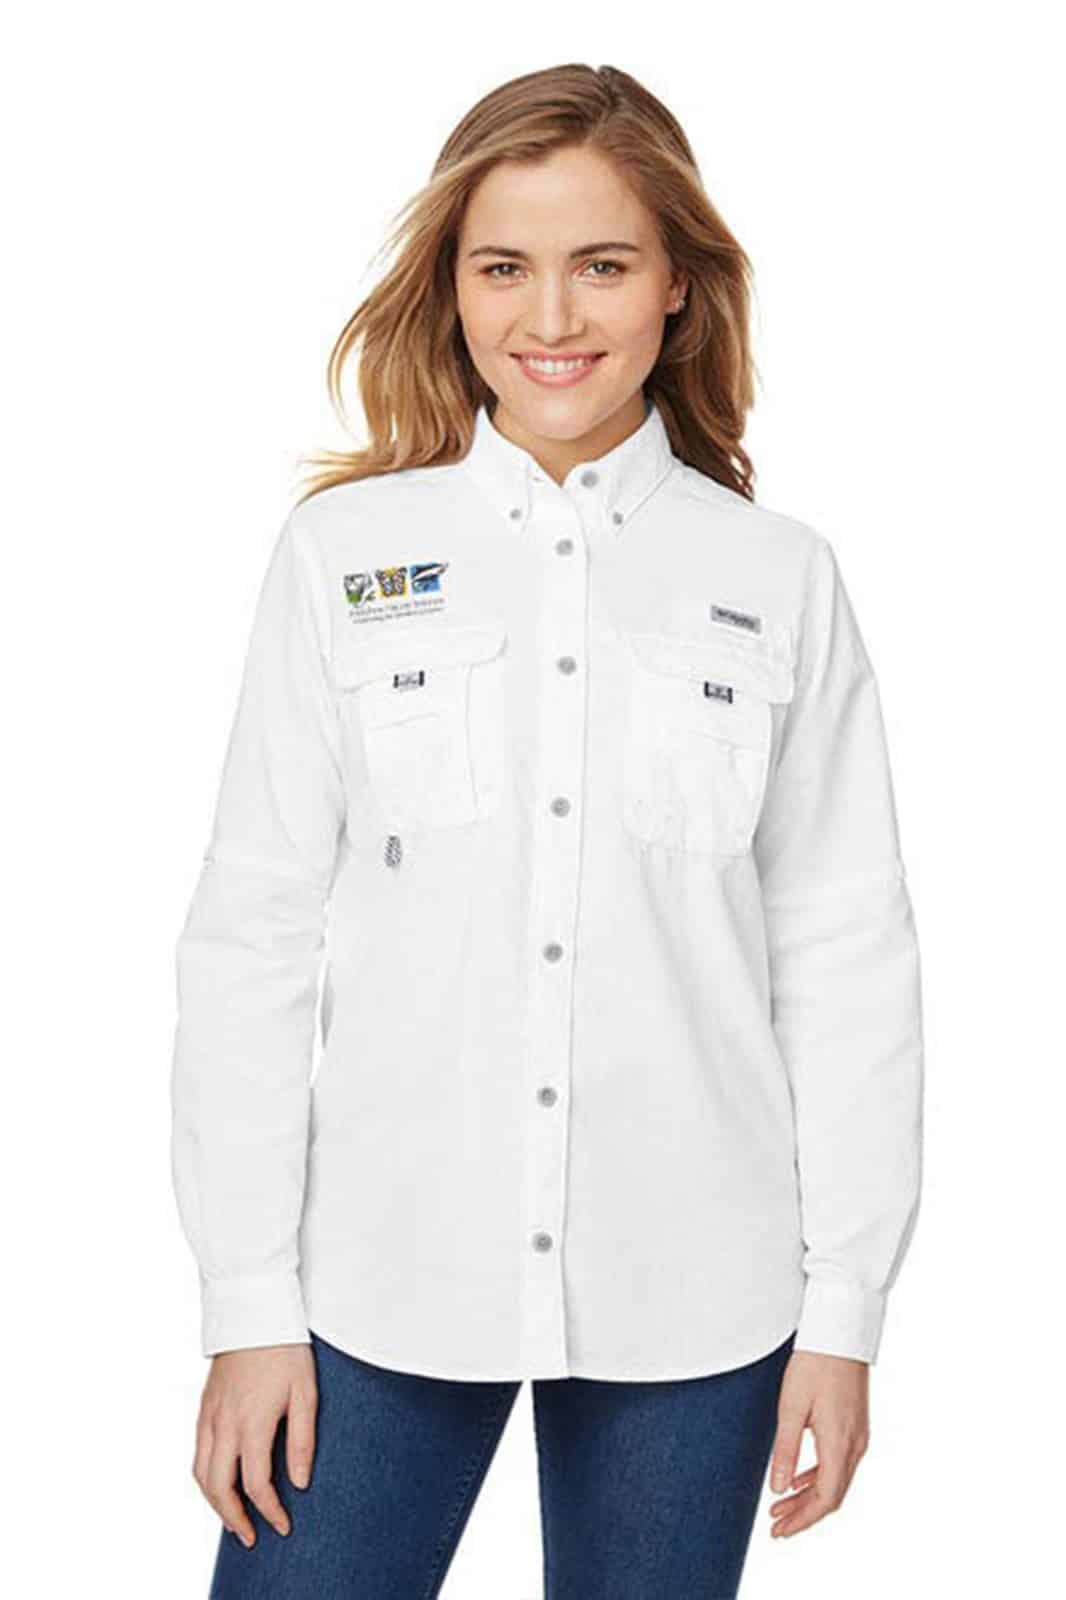 7314 women's long sleeve fishing shirt